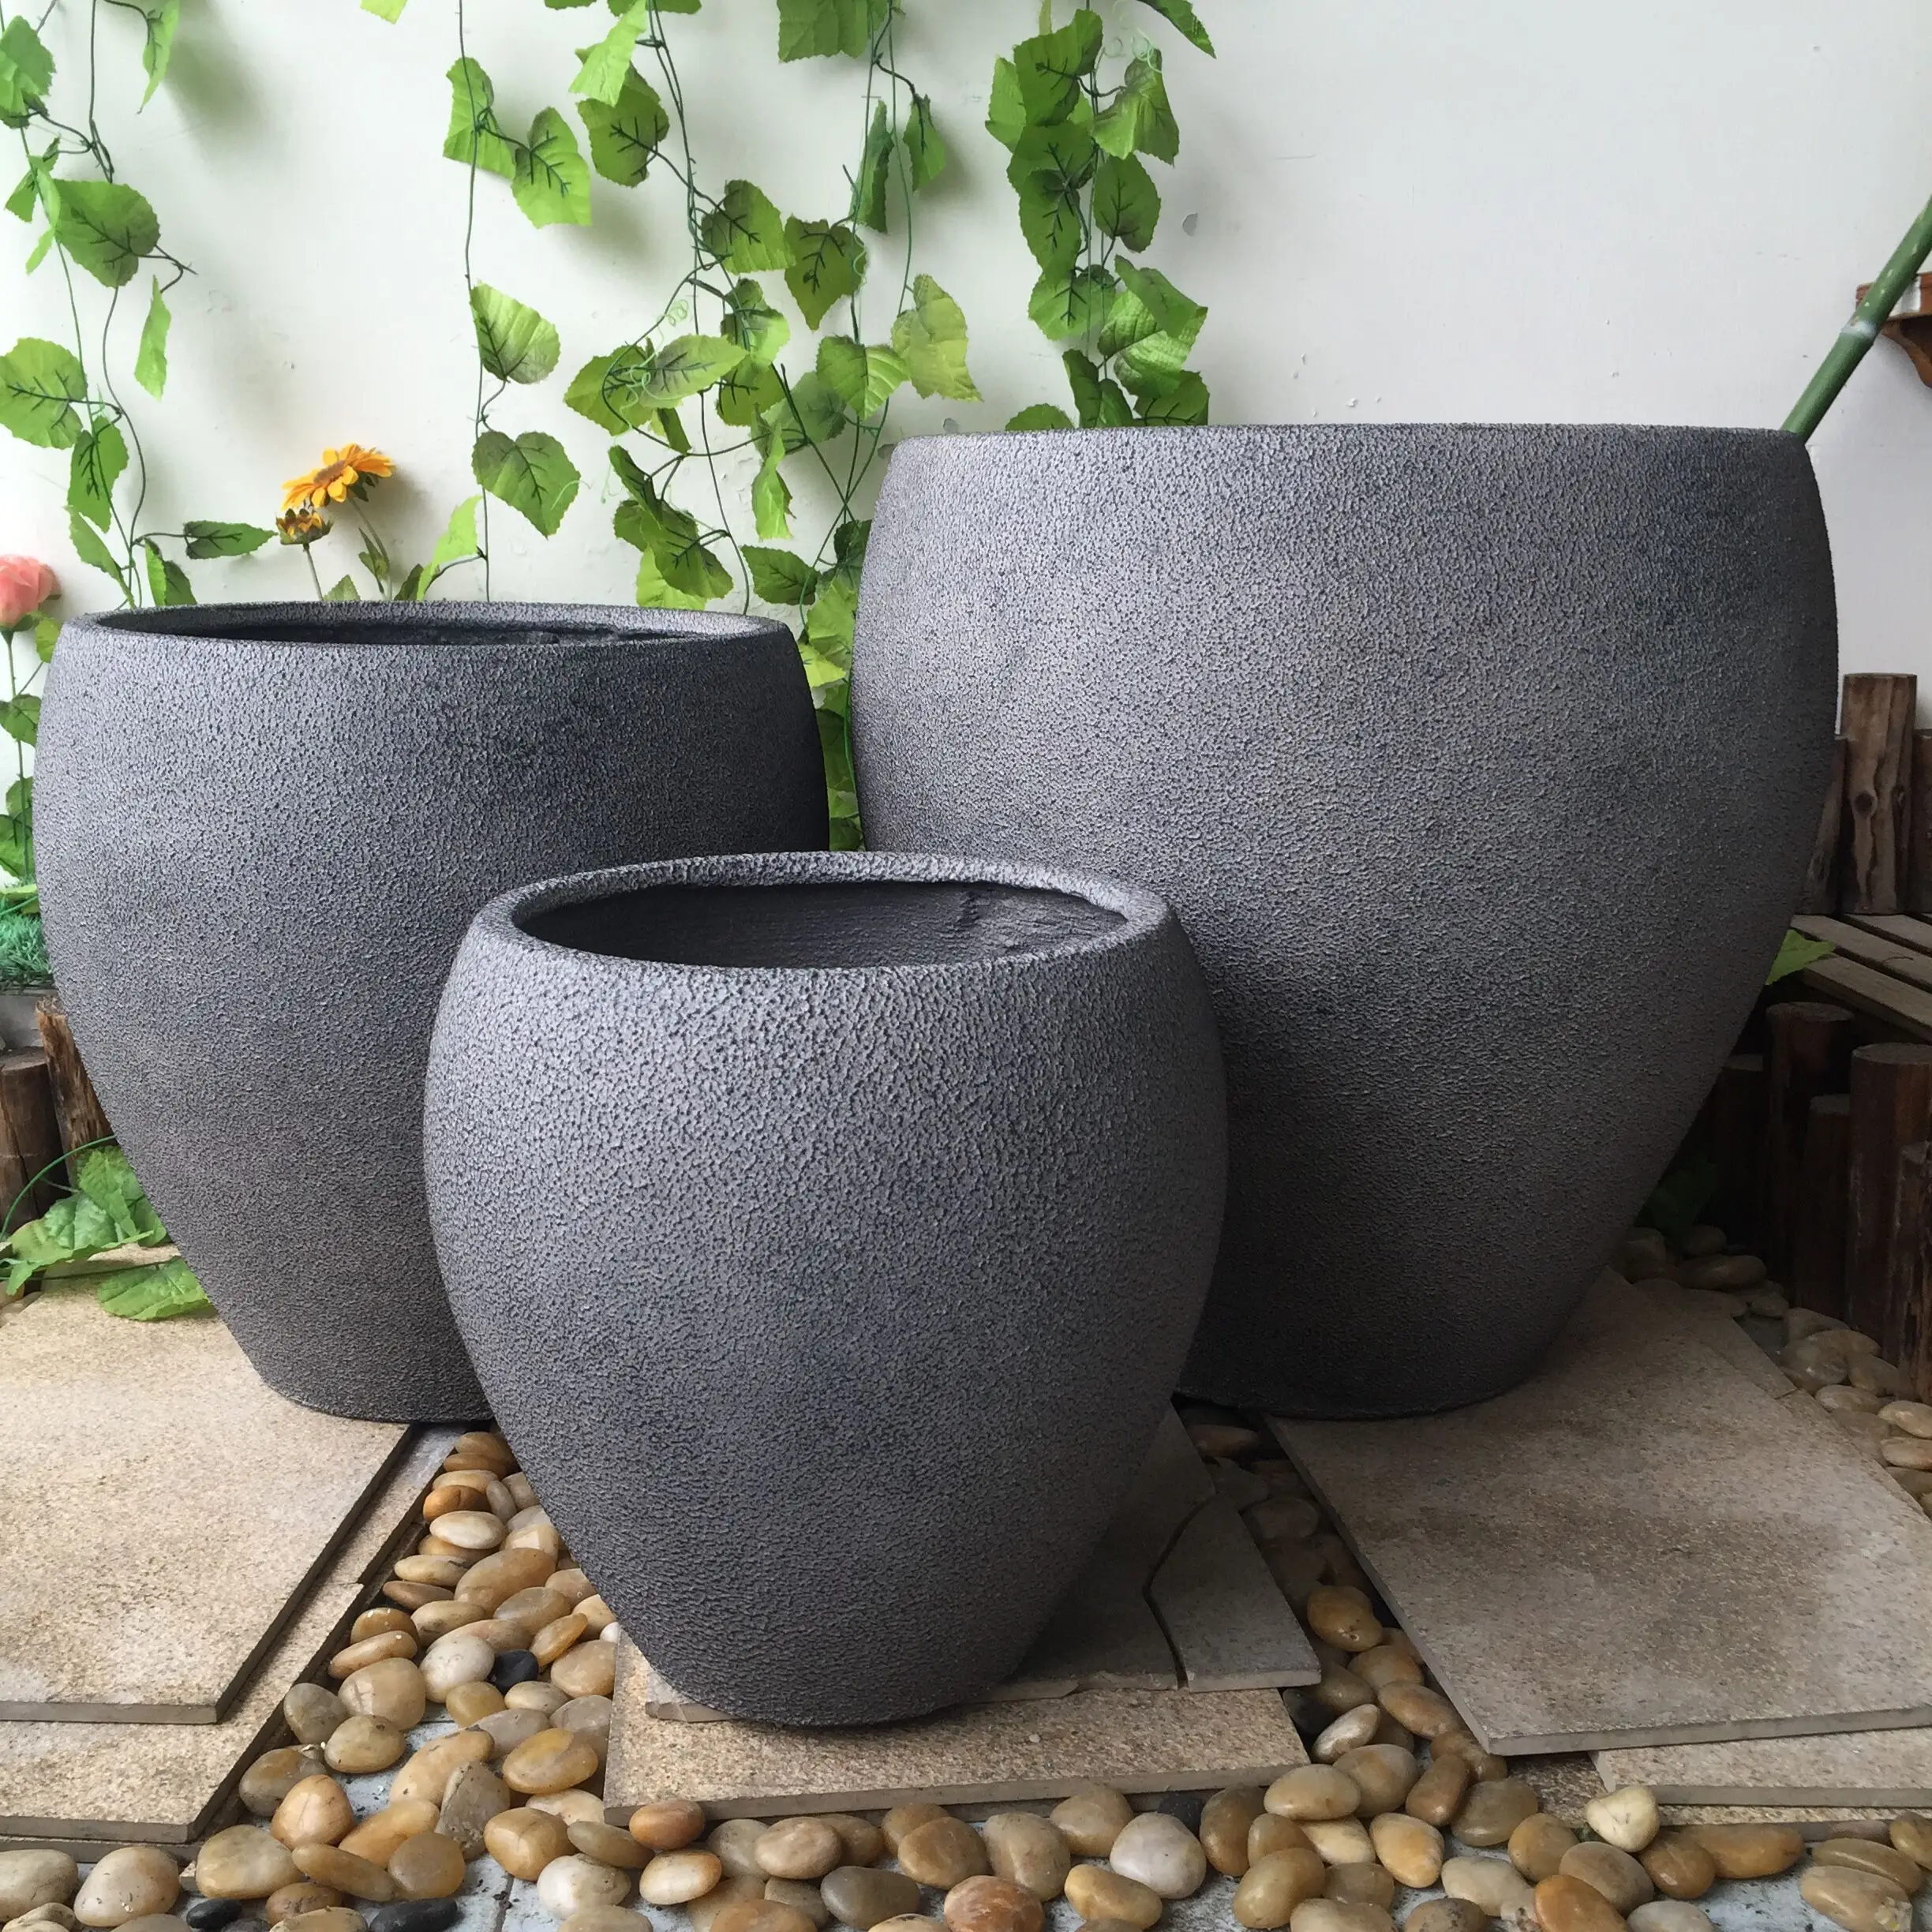 Mould Production Concrete Flower Pot Grc Planter Buy Mold Produced Concrete Flower Pot Mold Produced Concrete Flower Pot Mold Produced Concrete Flower Pot Product On Alibaba Com